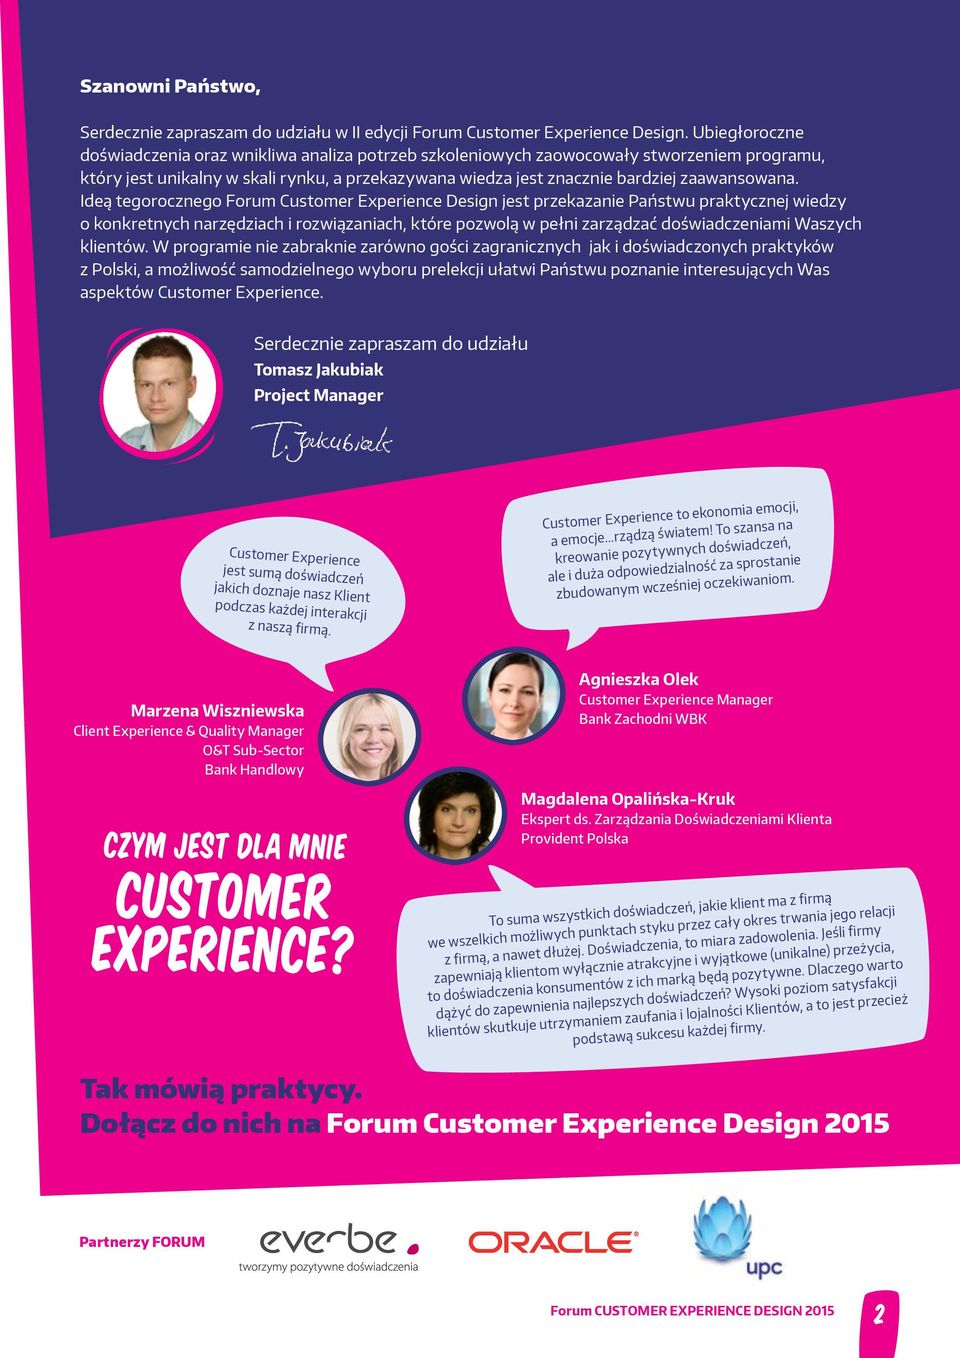 Ideą tegorocznego Forum Customer Experience Design jest przekazanie Państwu praktycznej wiedzy o konkretnych narzędziach i rozwiązaniach, które pozwolą w pełni zarządzać doświadczeniami Waszych